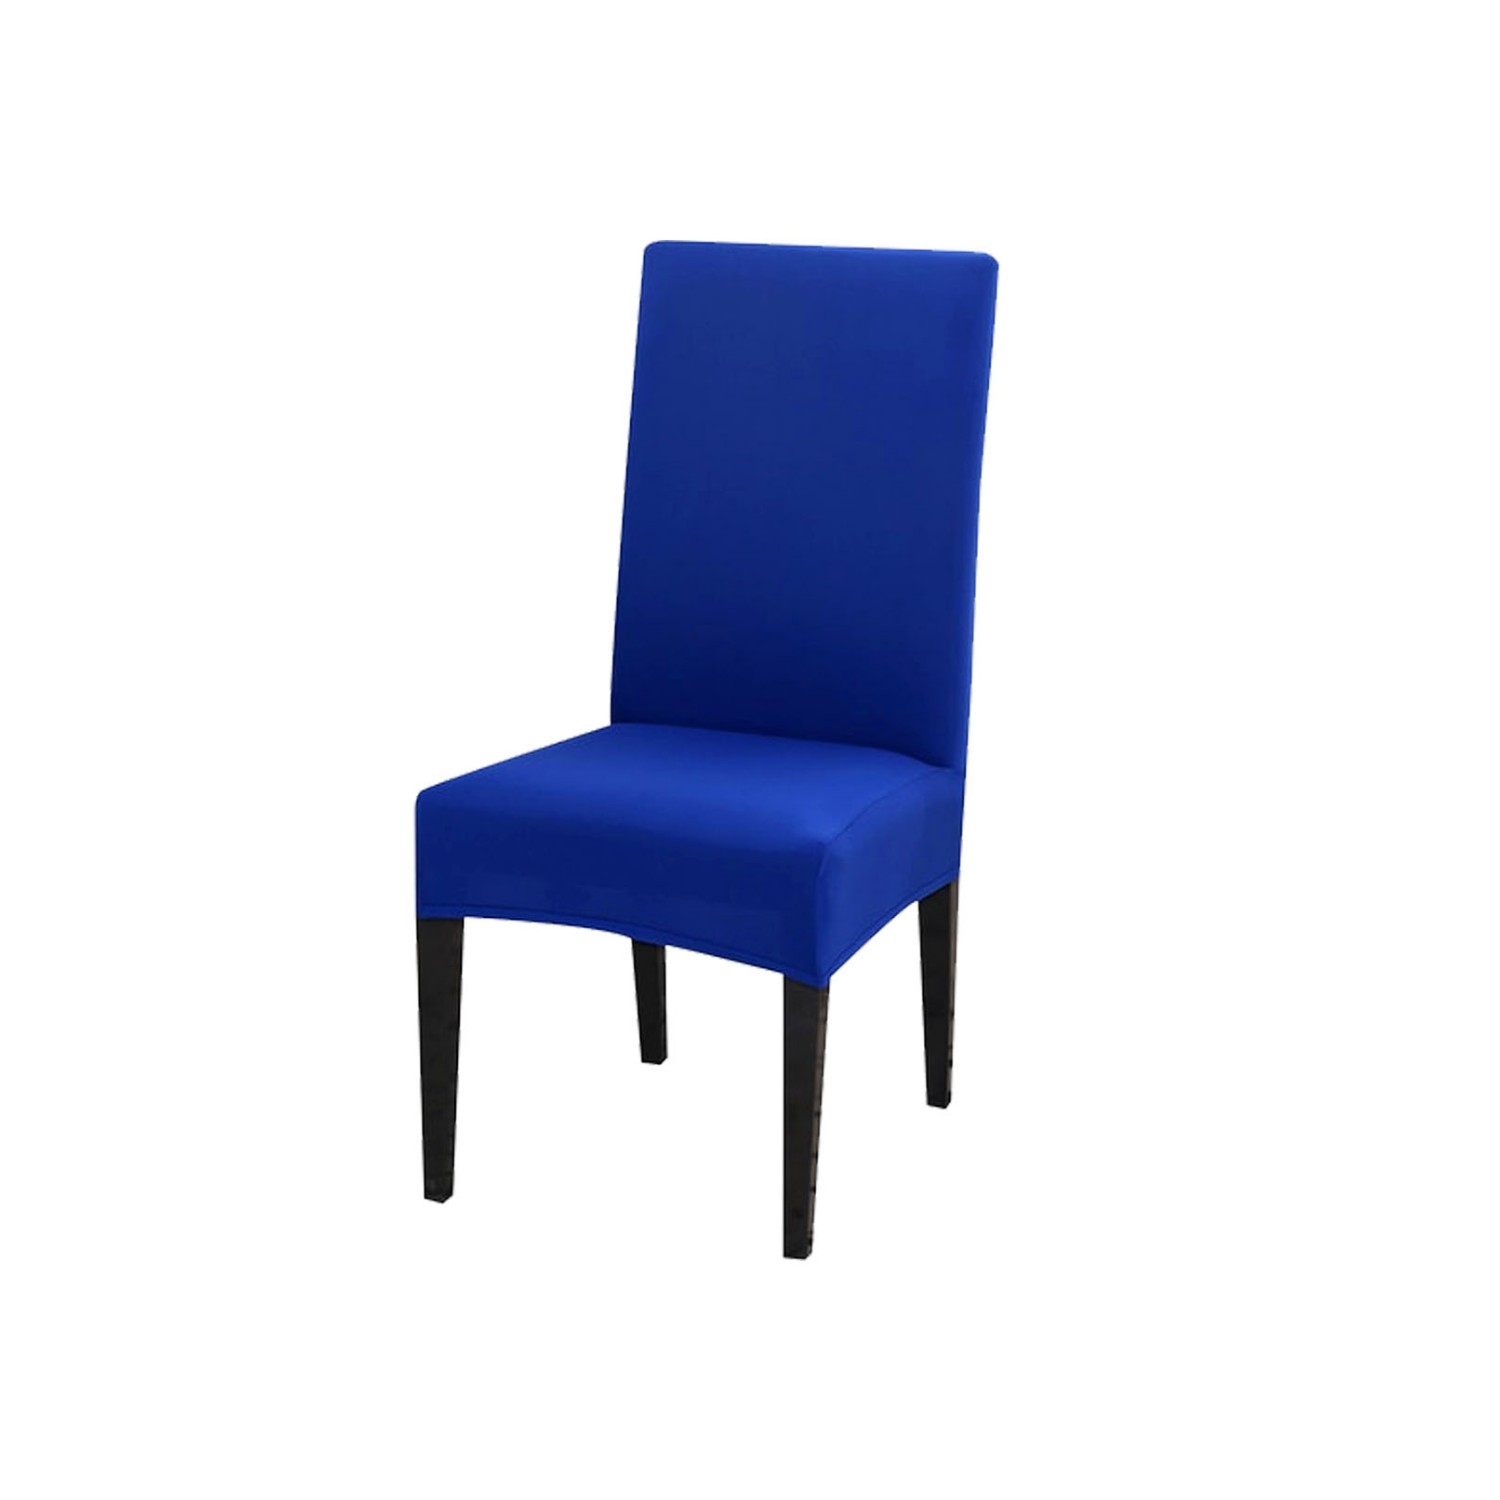 Чехол на стул LuxAlto Коллекция Jersey синий - фото 1